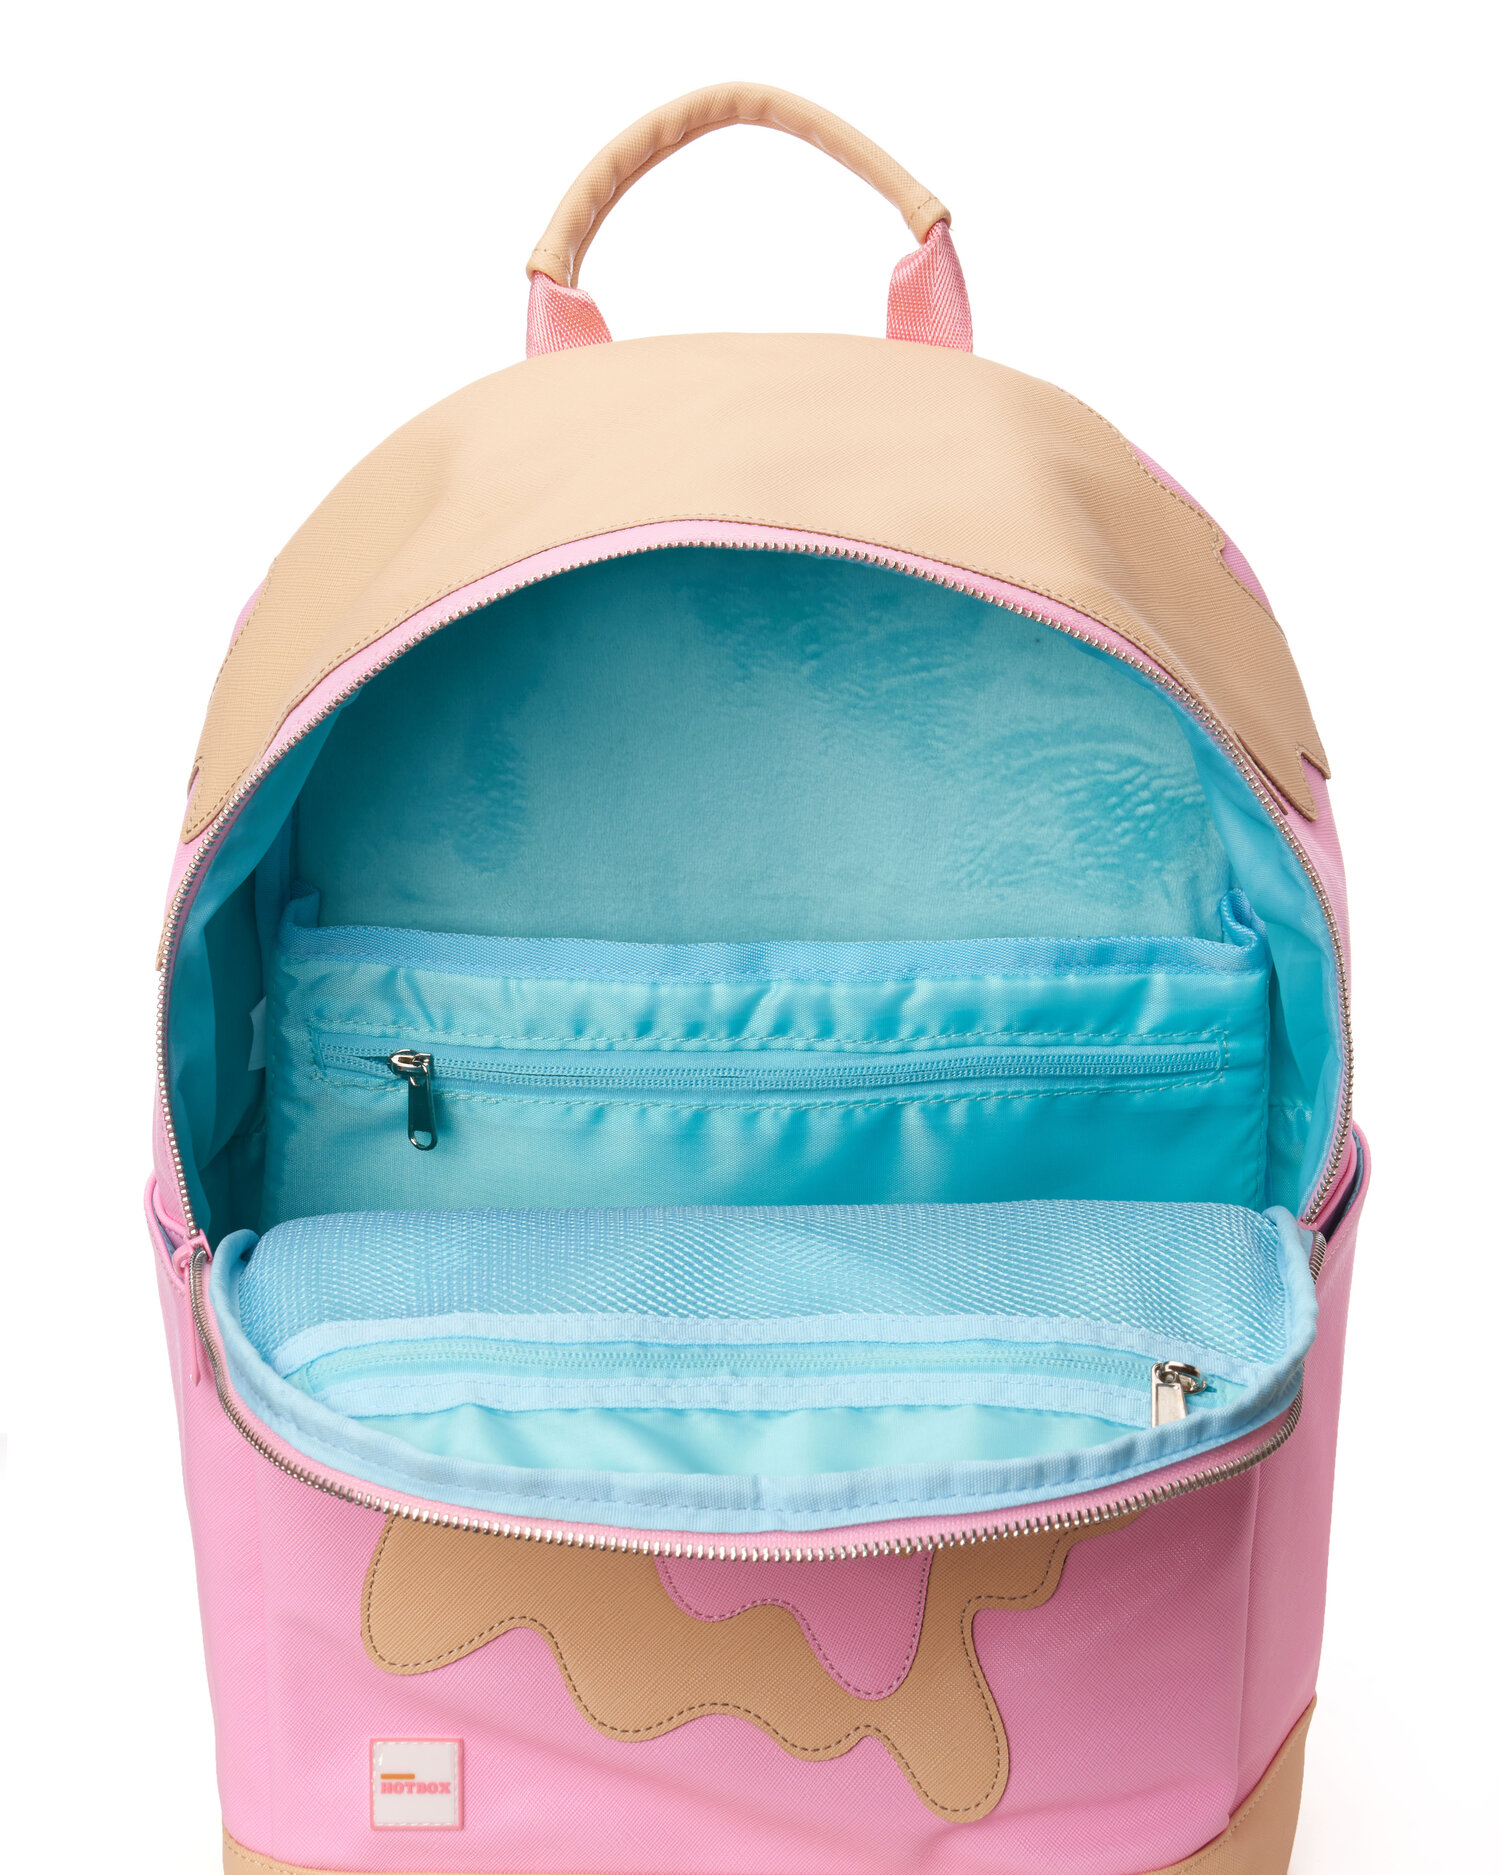 Red Drip Backpack  Buy Backpack Online — WearHotBox